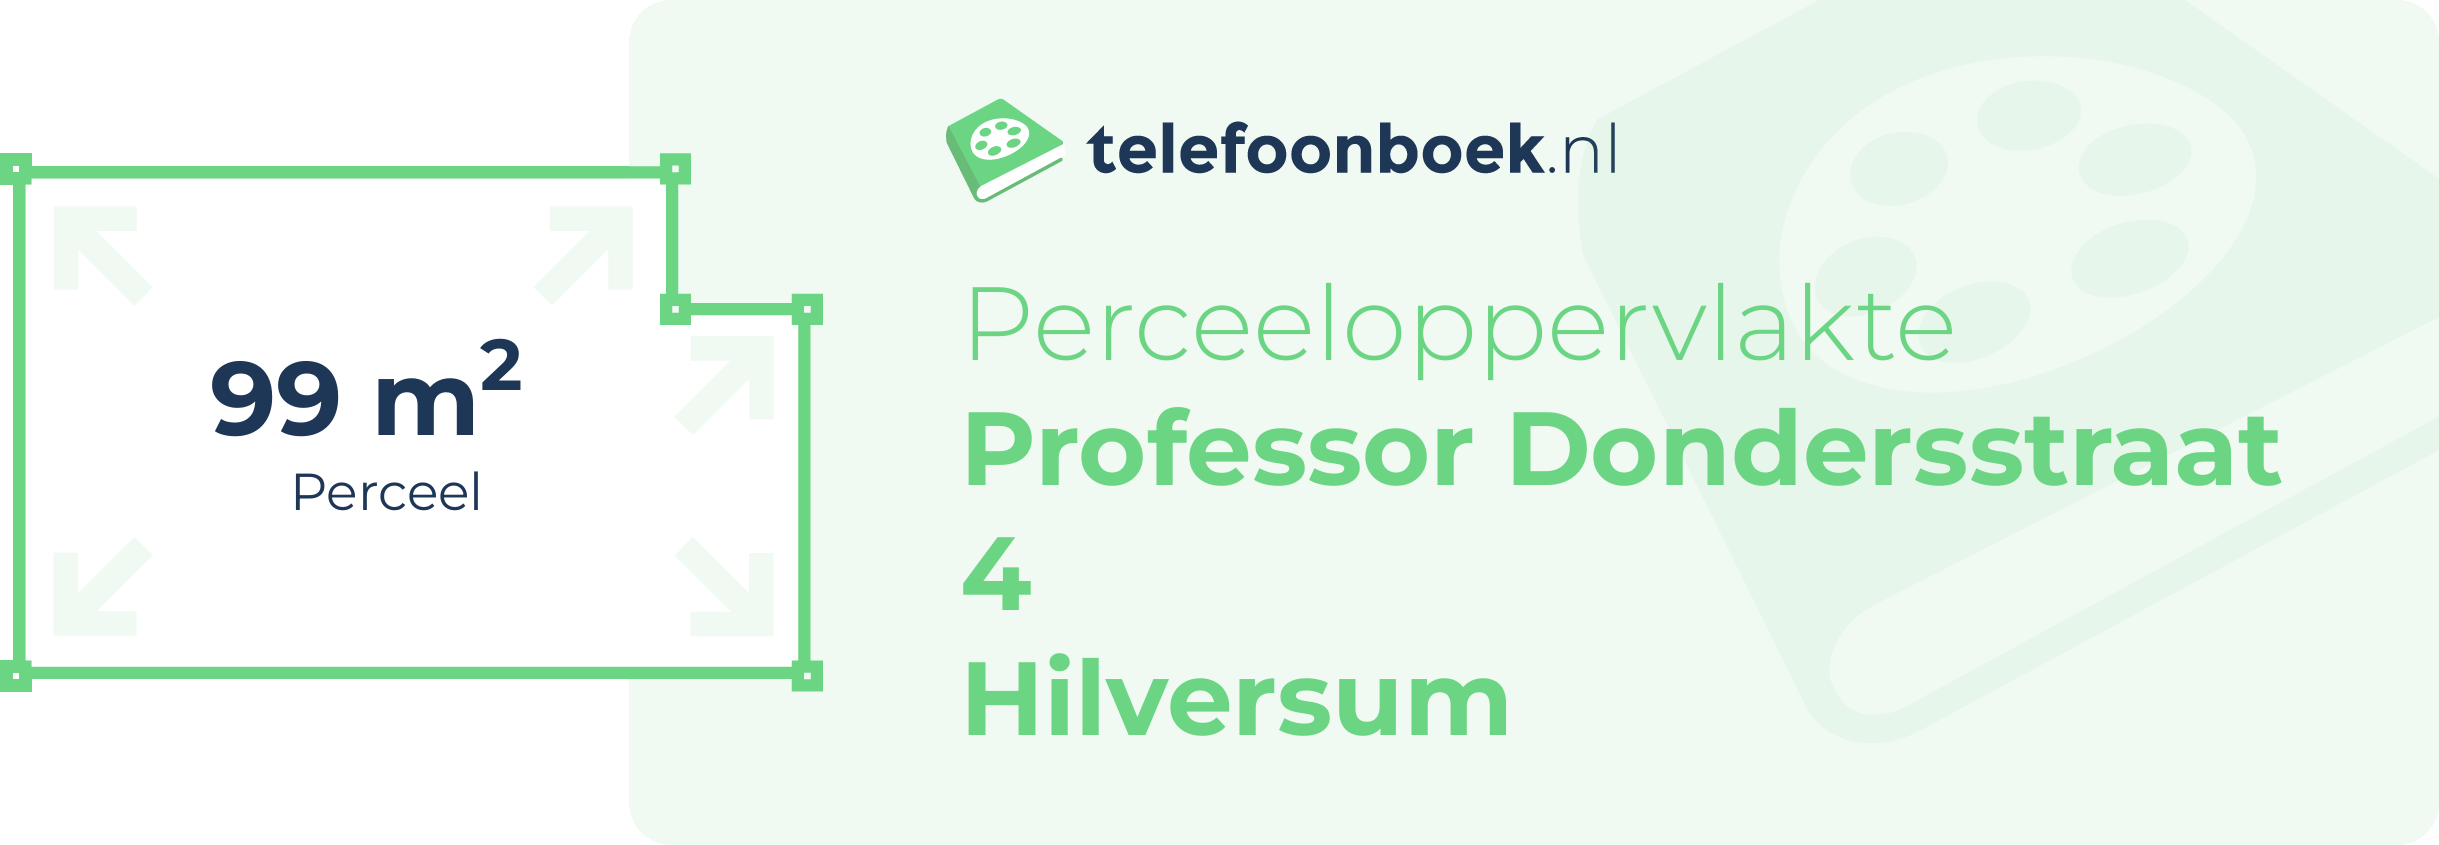 Perceeloppervlakte Professor Dondersstraat 4 Hilversum